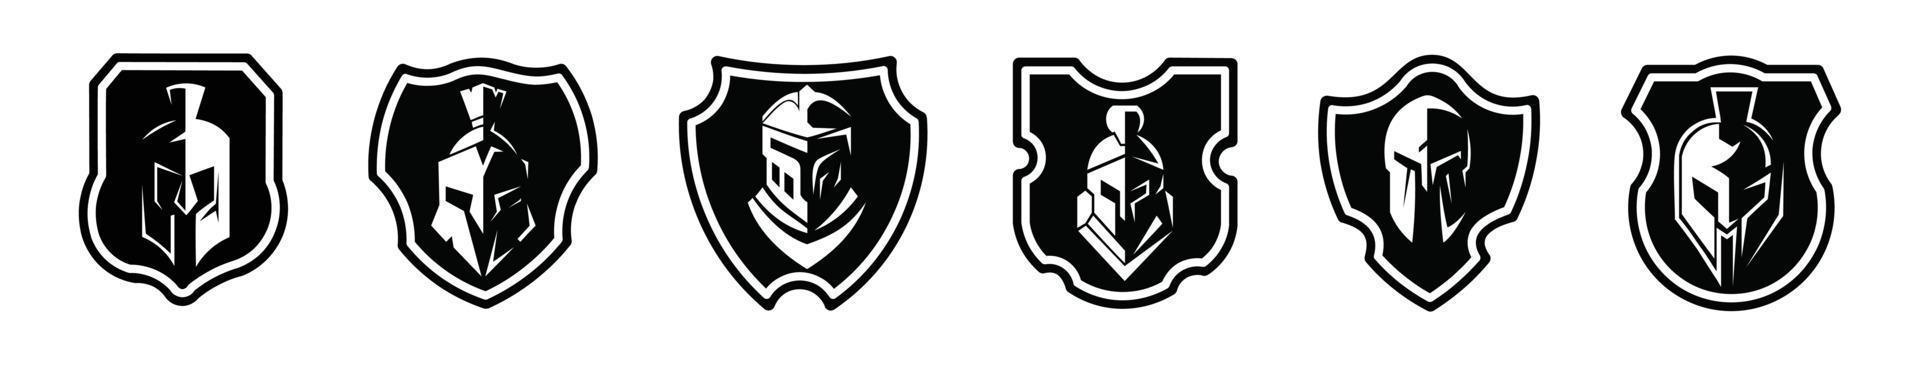 platt spartansk sköld svart logotyp ikonuppsättning design vektorillustration på en vit bakgrund vektor